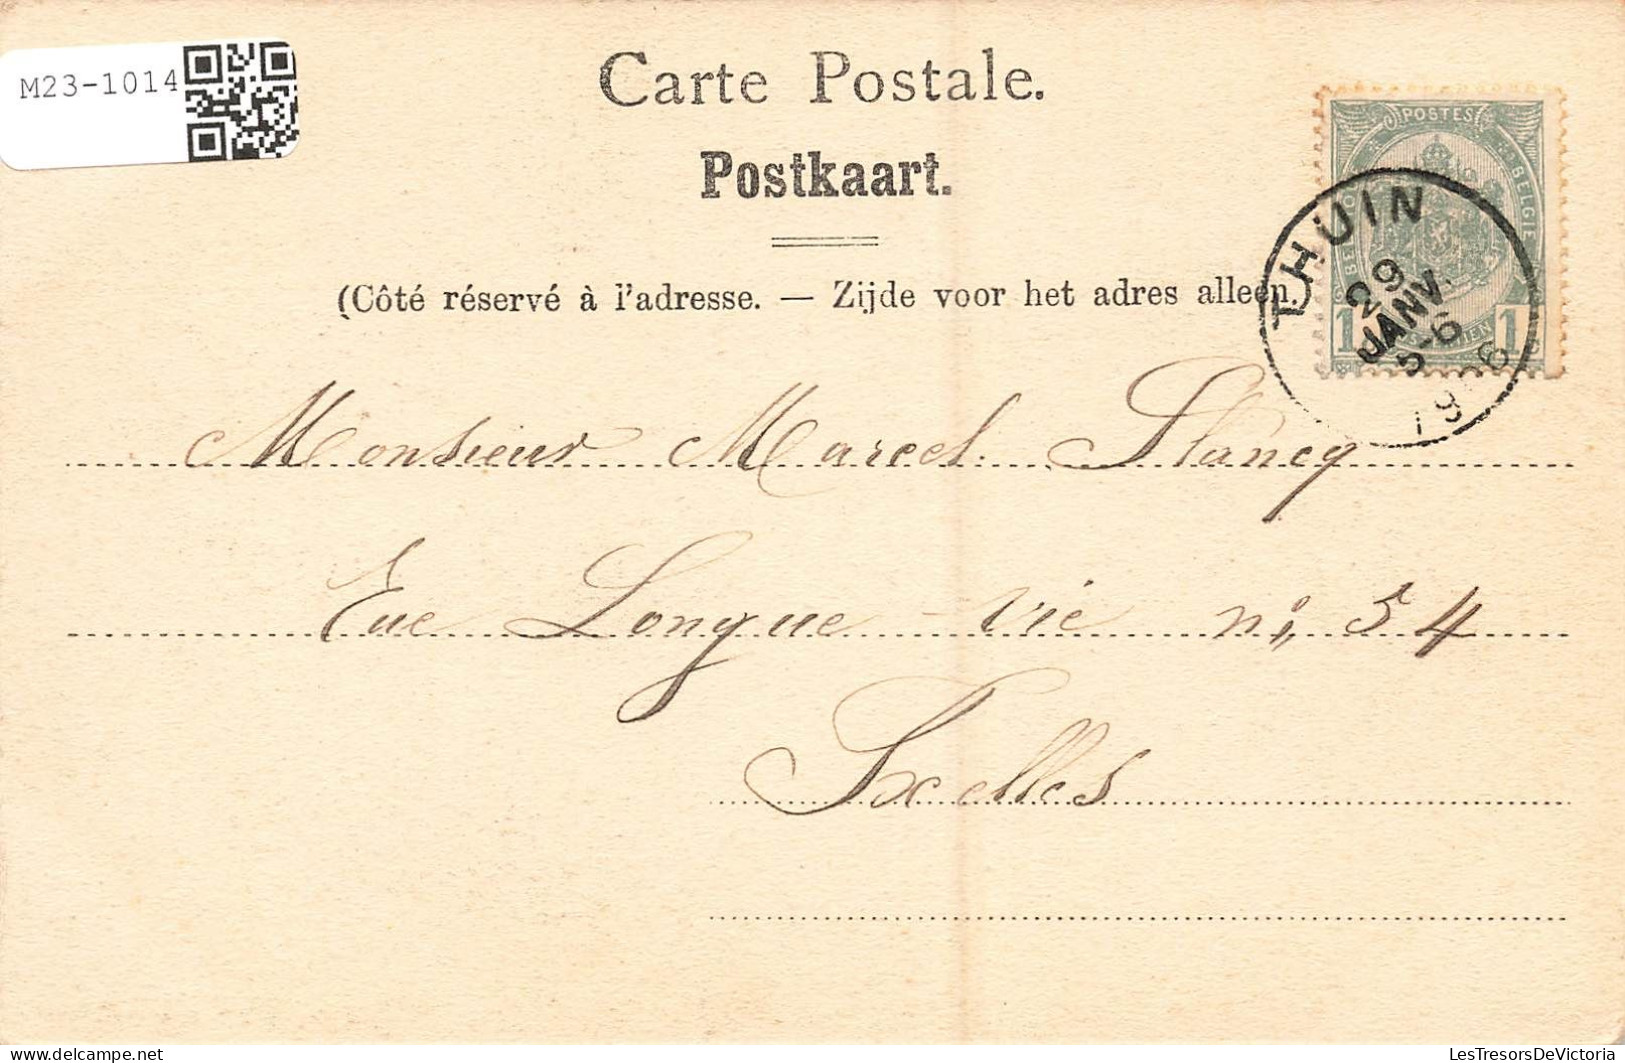 BELGIQUE - Thuin - Paysage - Carte Postale Ancienne - Thuin